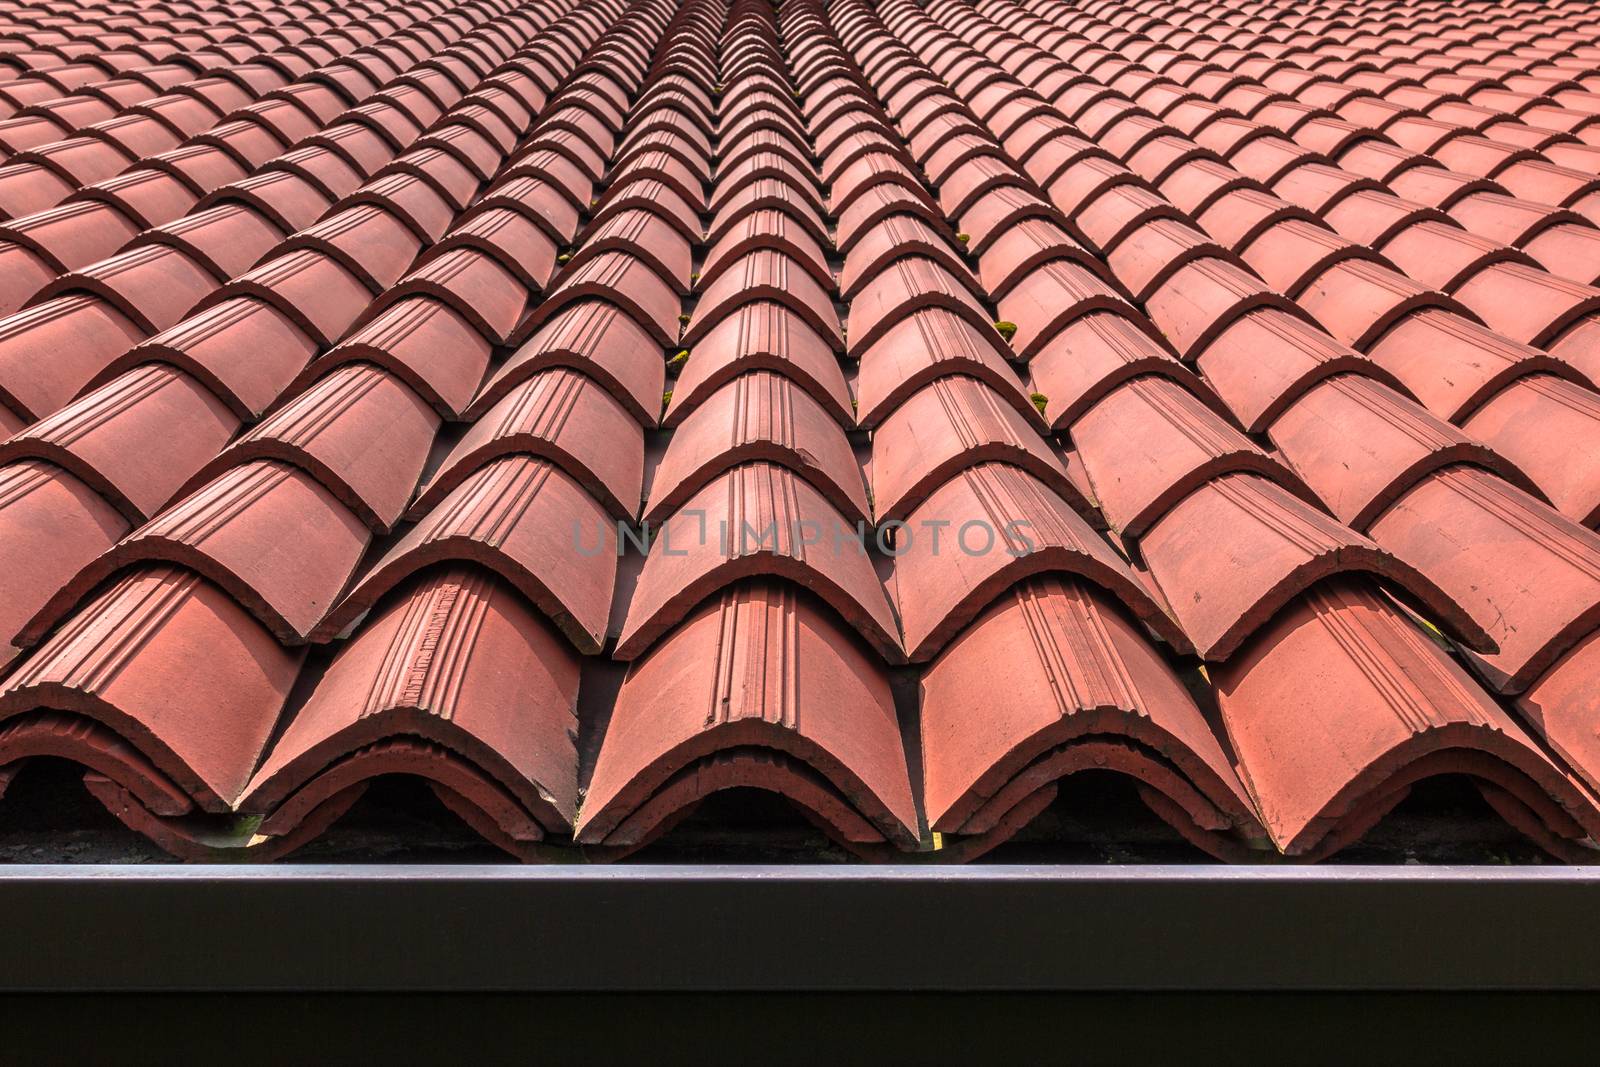 Tiled roof by germanopoli